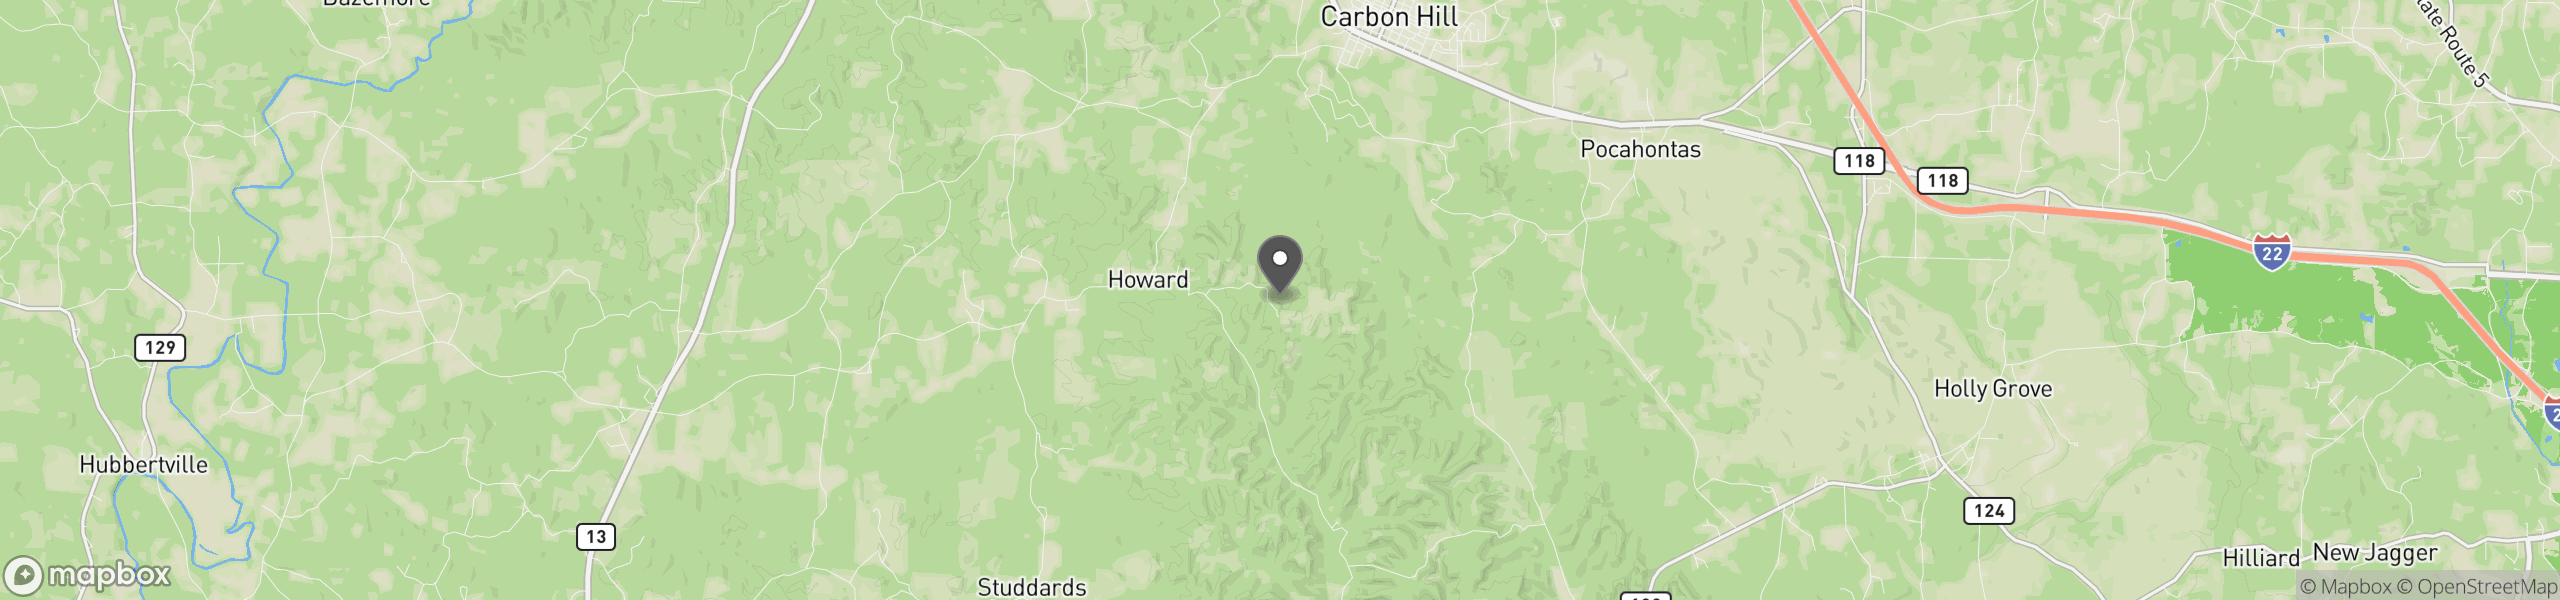 Carbon Hill, AL